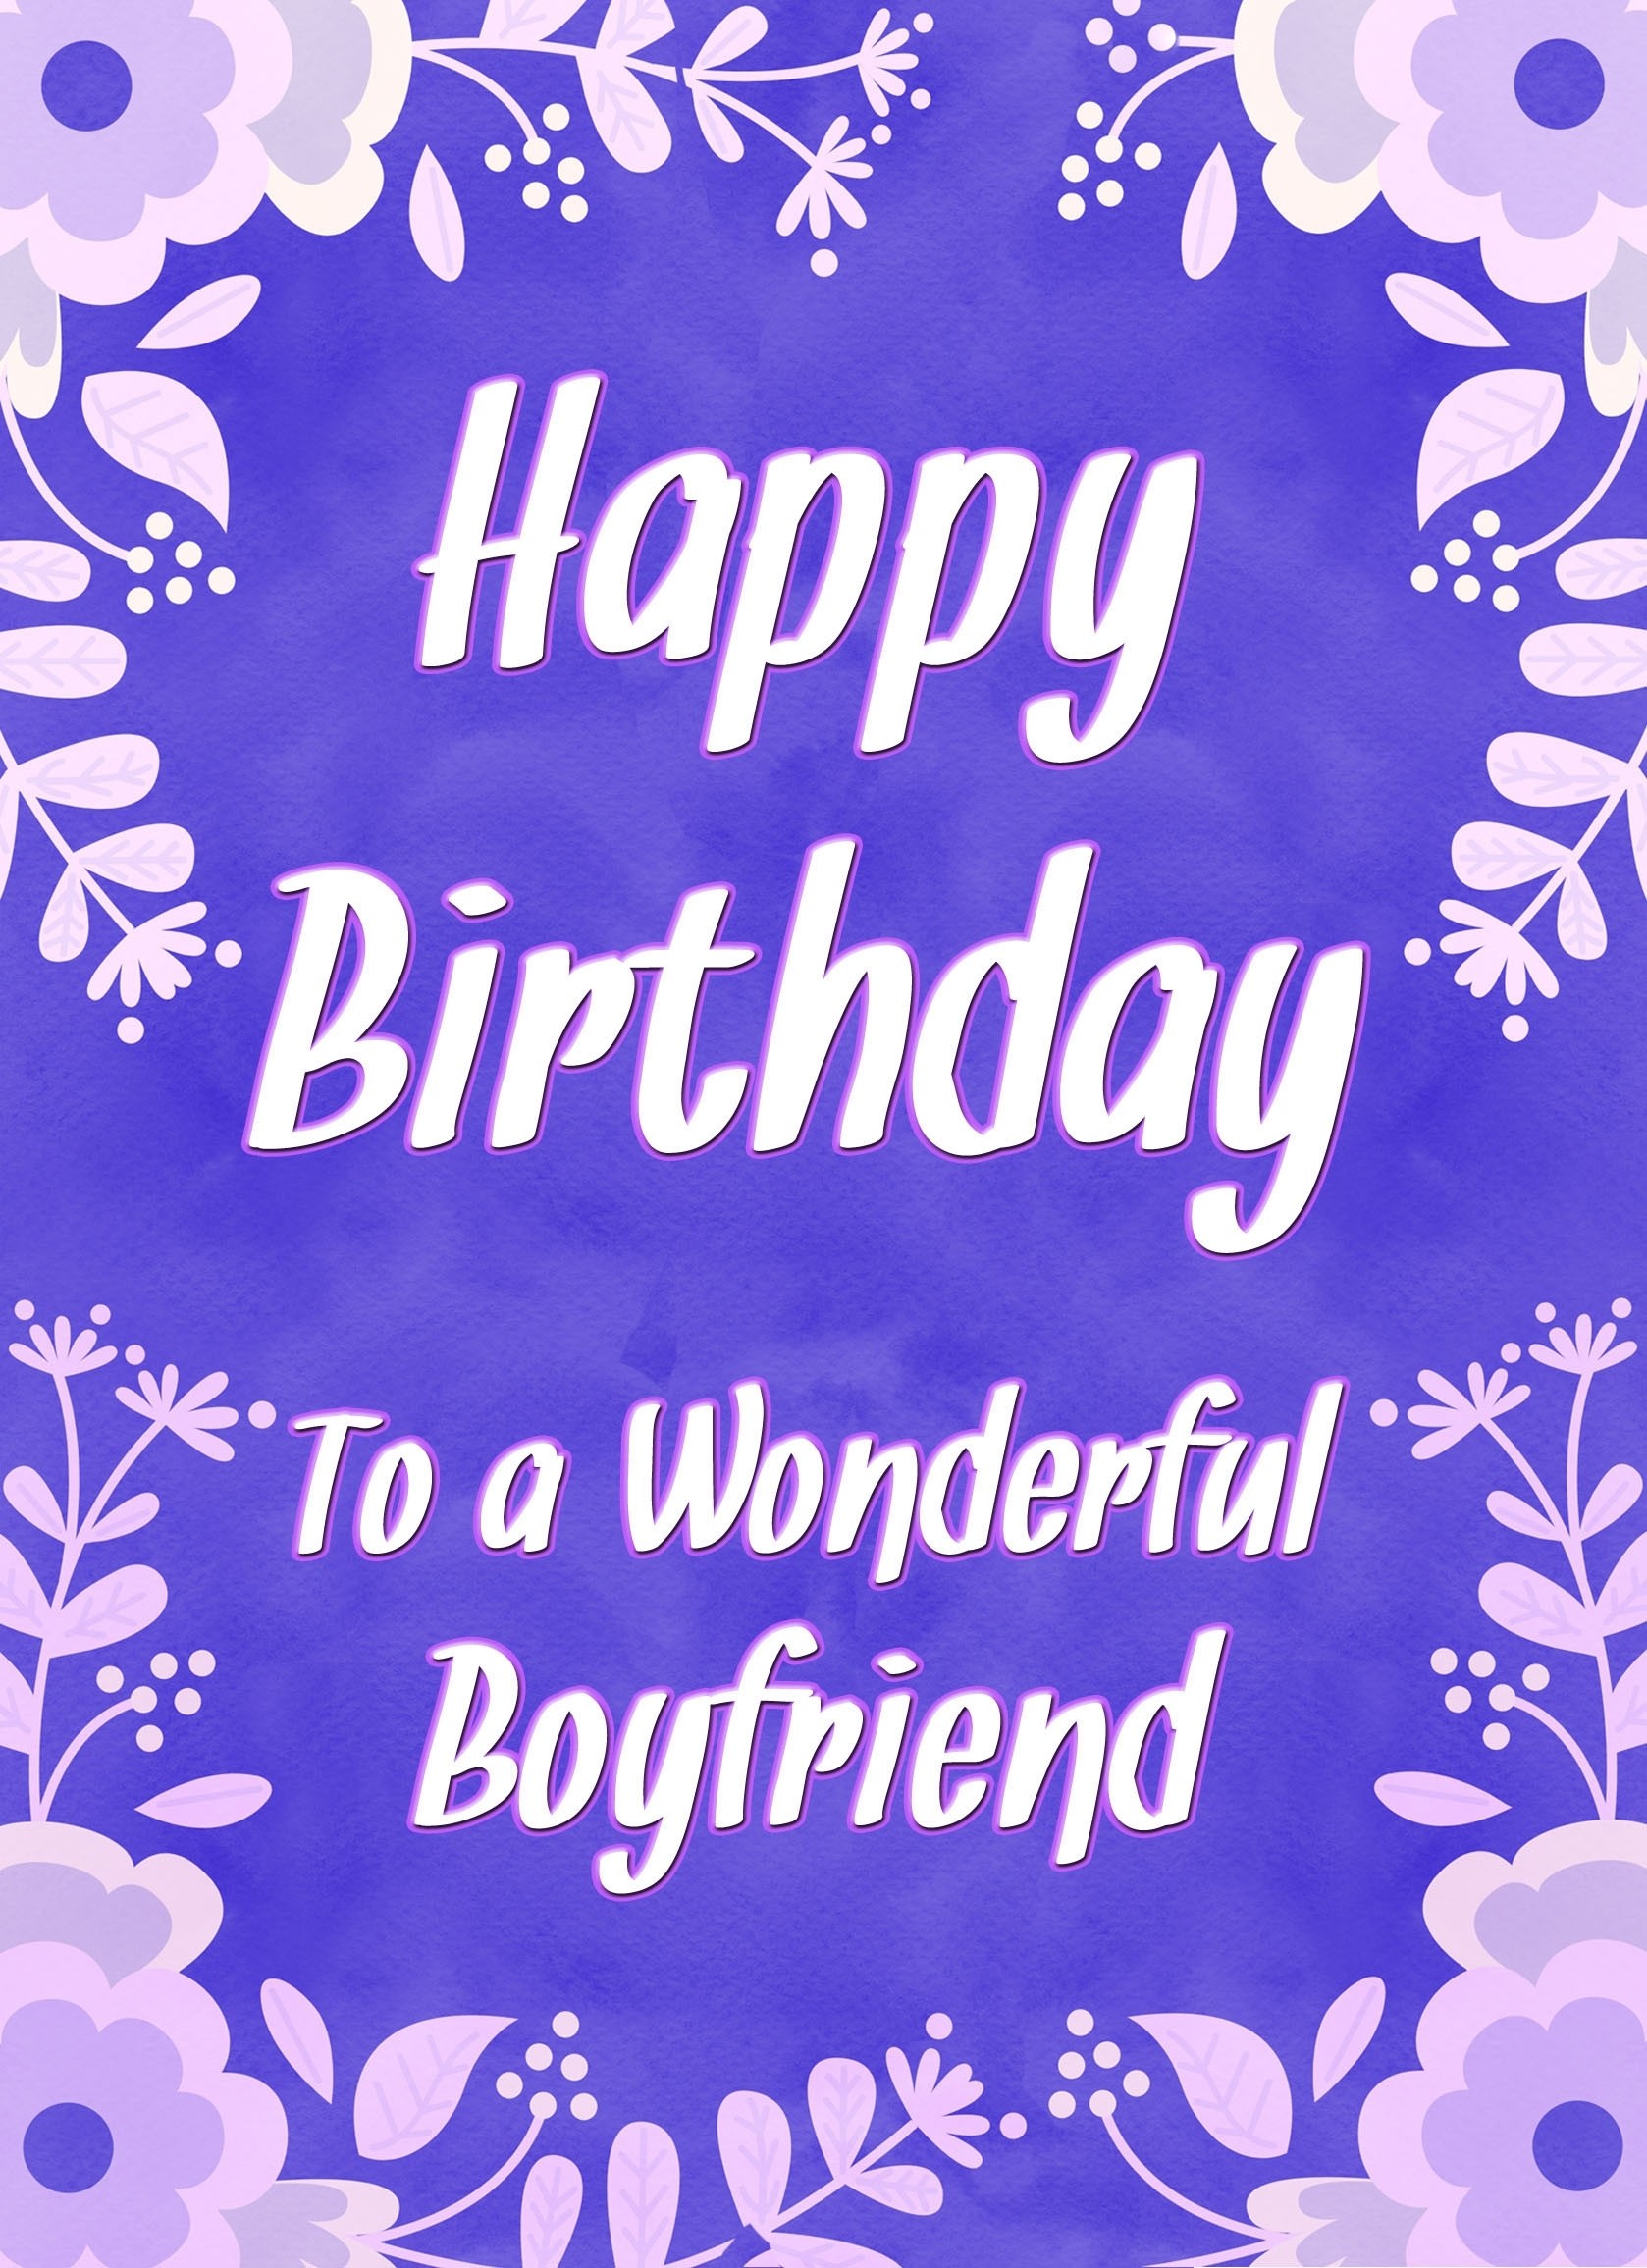 Birthday Card For Wonderful Boyfriend (Purple Border)